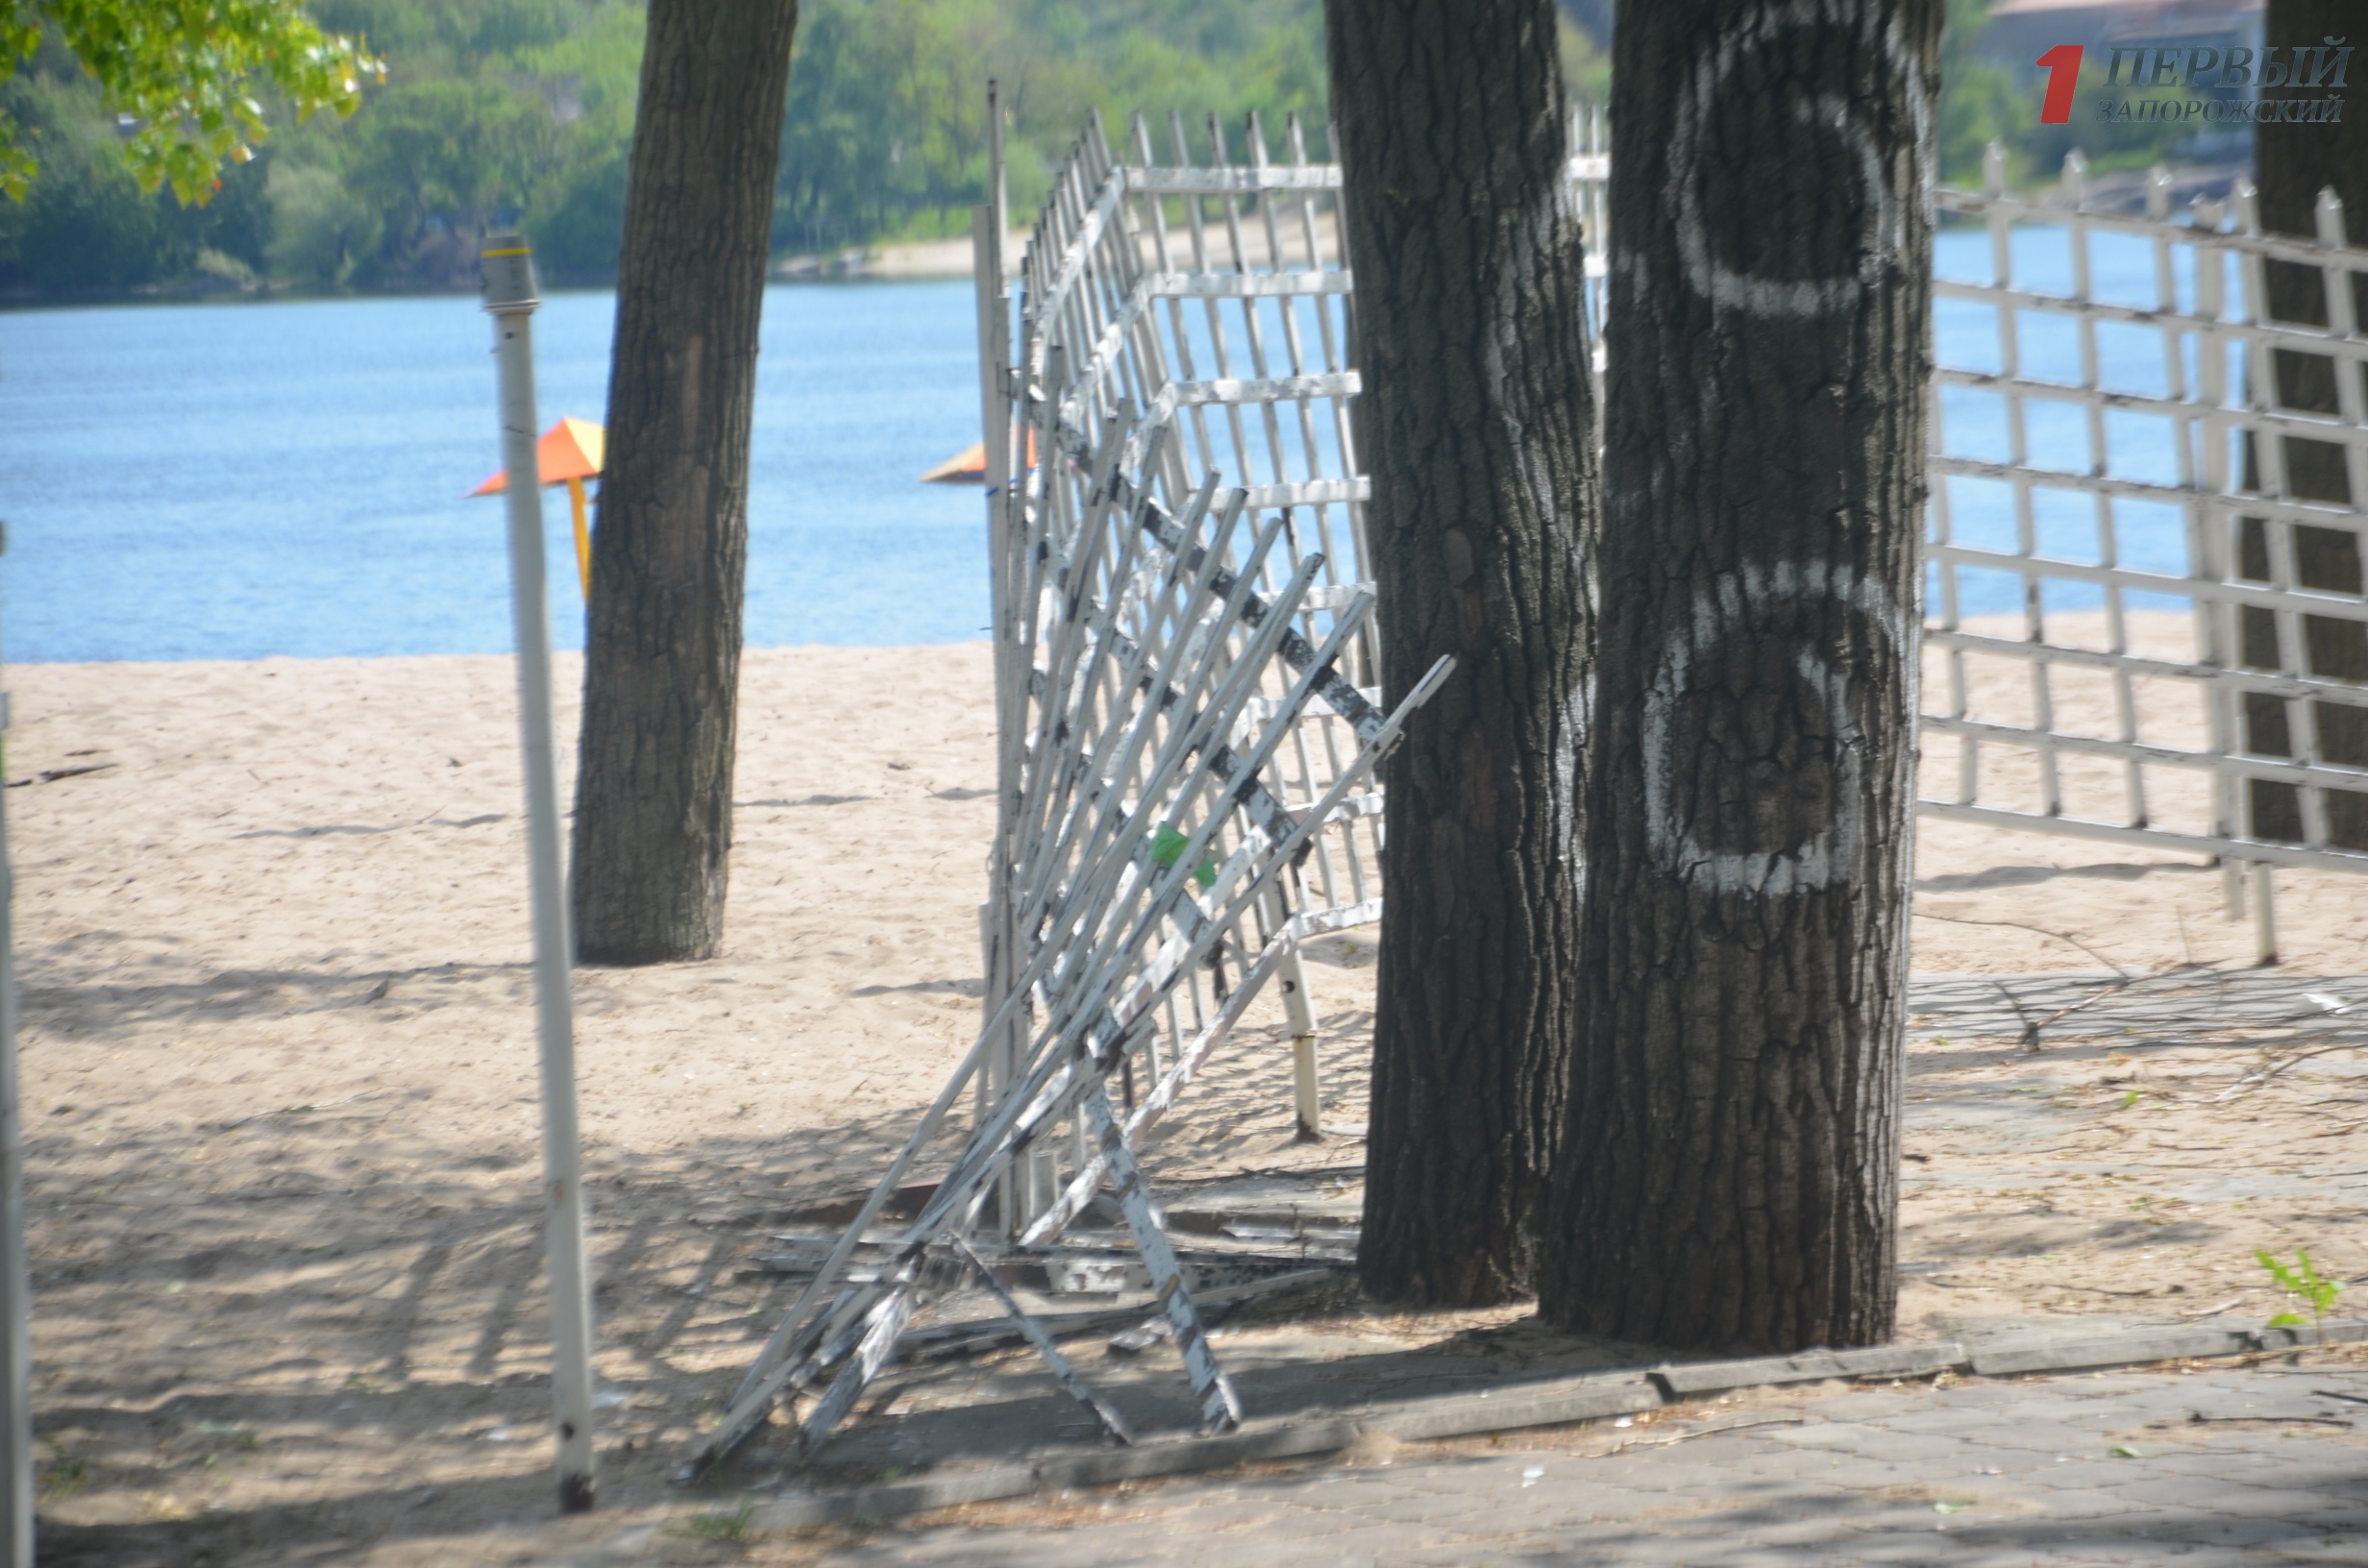 Центральный пляж Запорожья встречает гостей мусором, разбитой плиткой, ржавыми раздевалками и очередными застройками - ФОТО